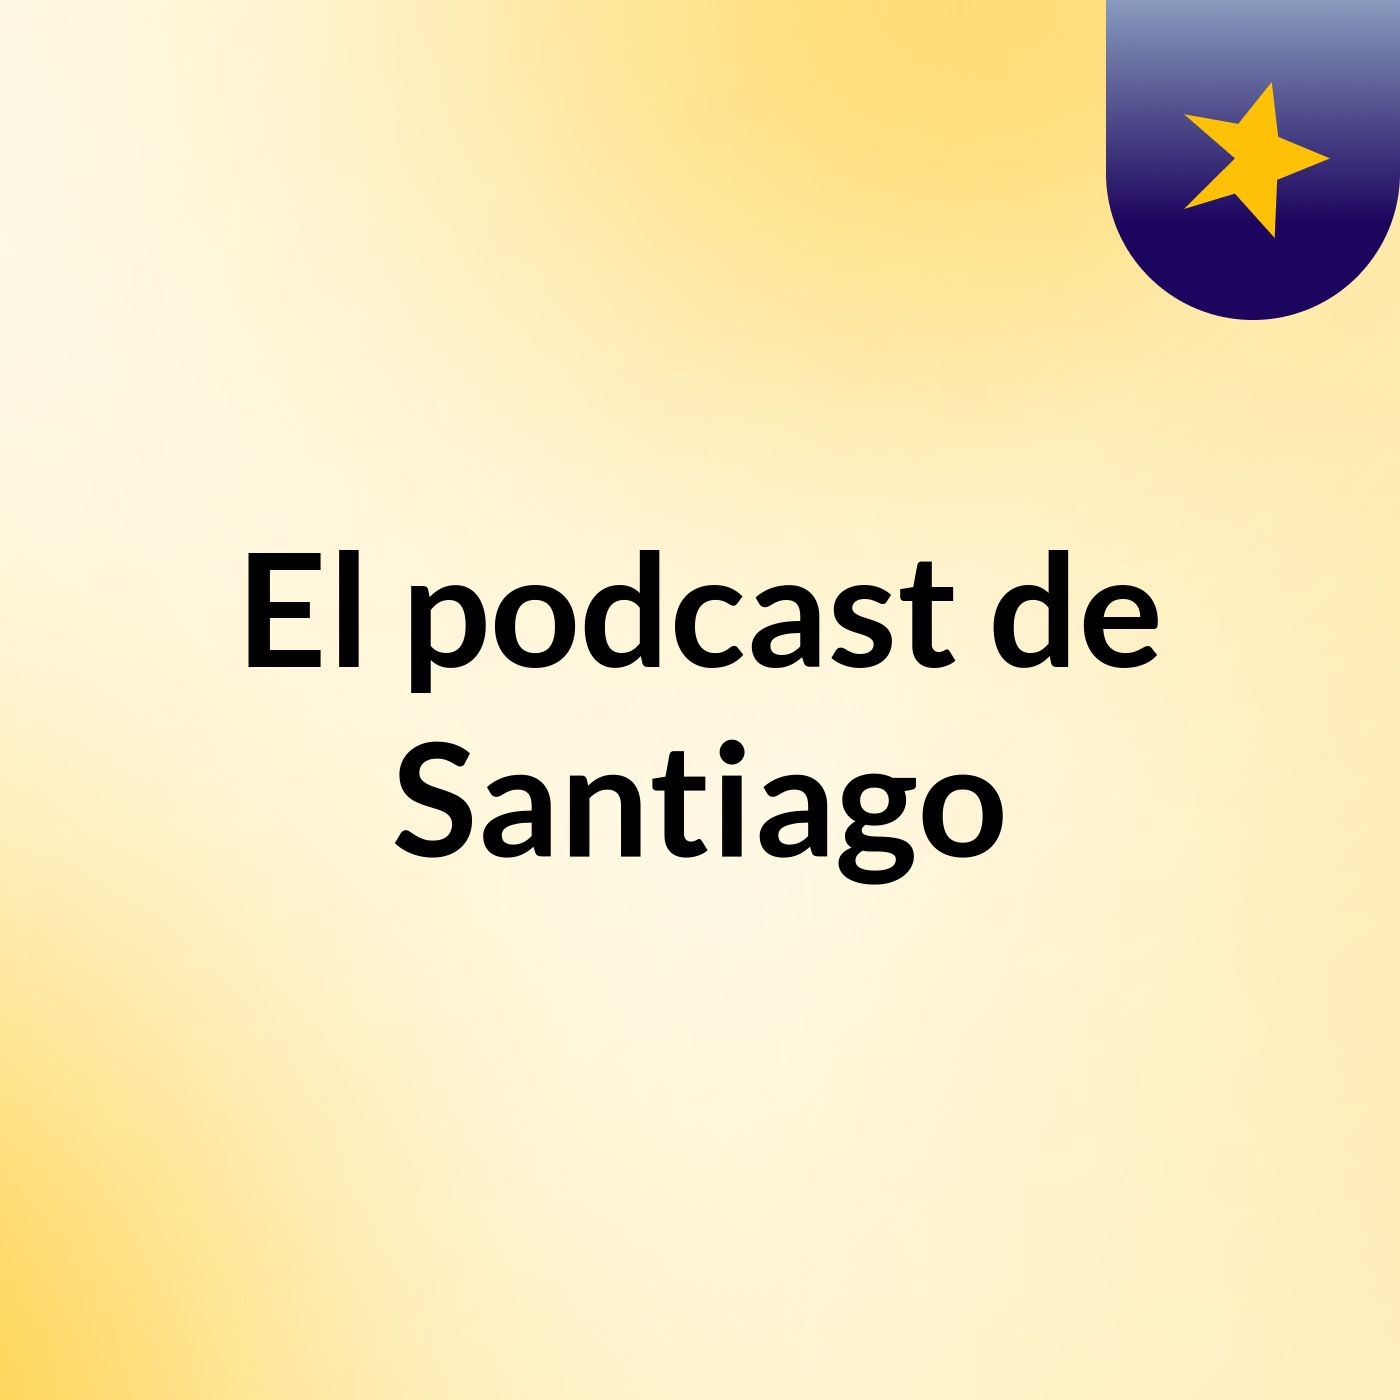 Episodio 2 - El podcast de Santiago